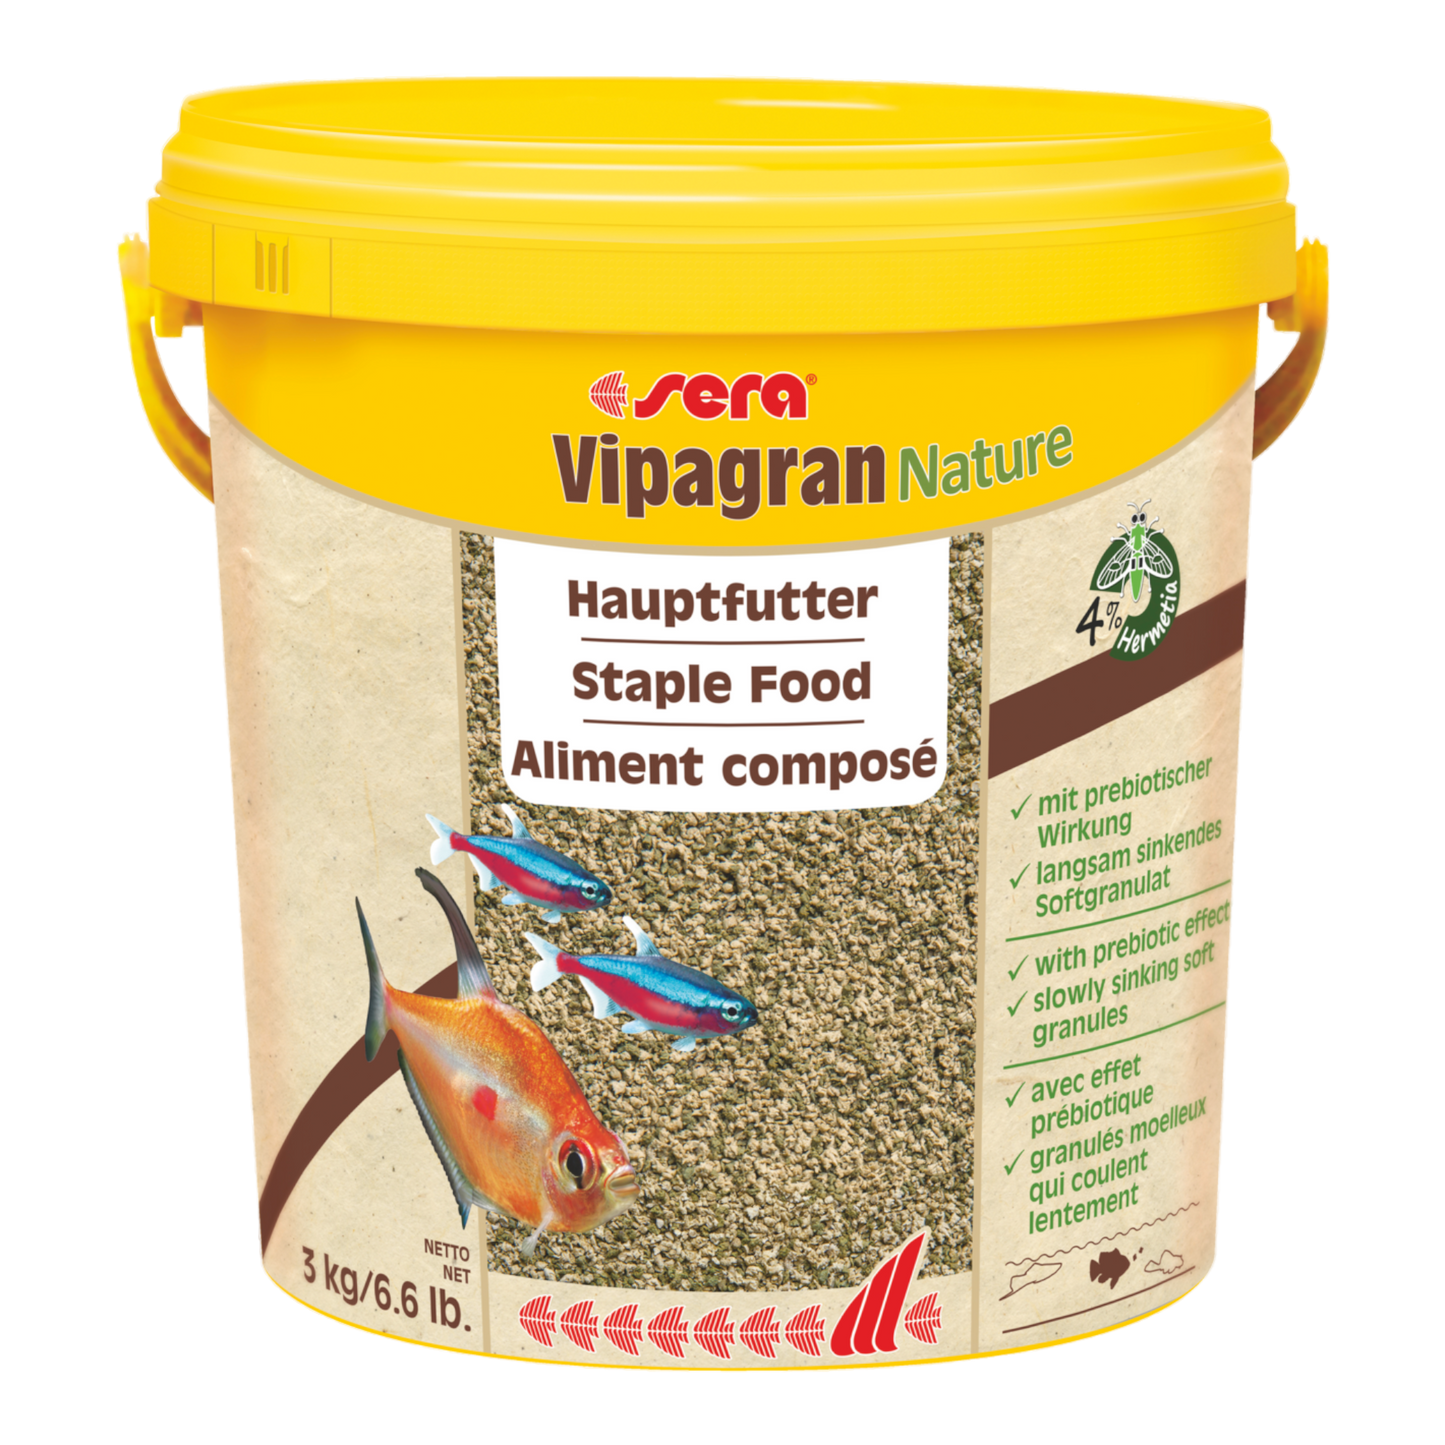 sera Vipagran Nature ist das Hauptfutter aus schonend hergestelltem Softgranulat ohne Farb- und Konservierungsstoffe für alle in der mittleren Wasserzone fressenden Fische.